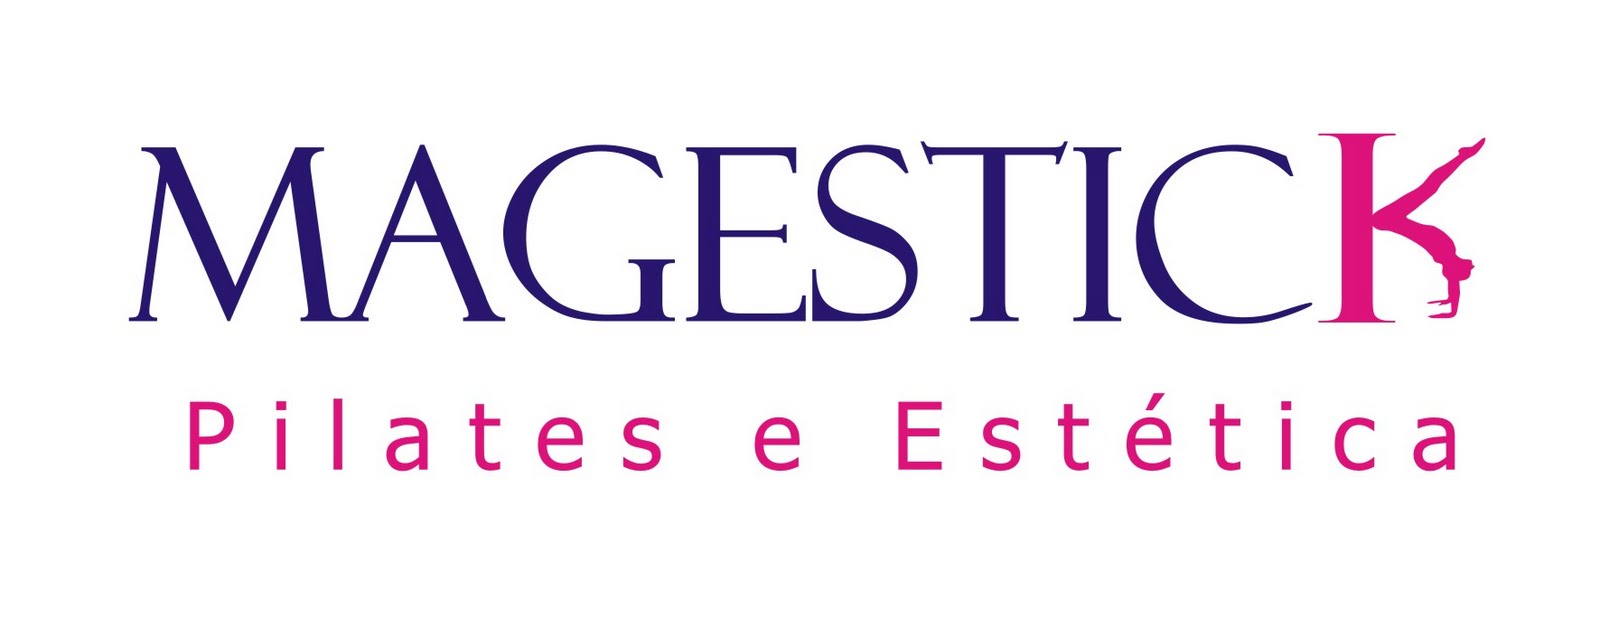 Magestick Pilates e Estética